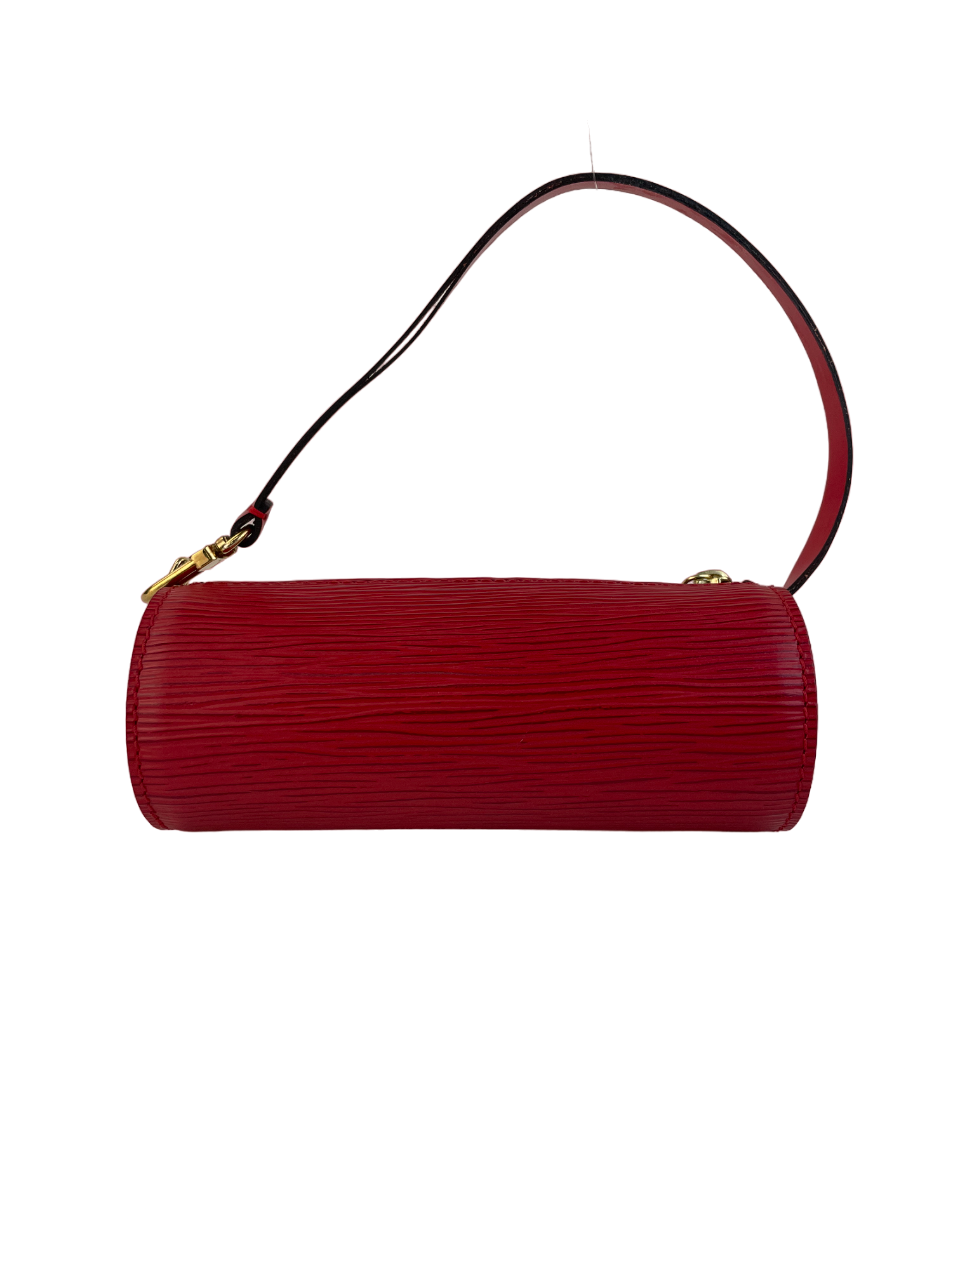 Papillon cloth clutch bag Louis Vuitton Brown in Cloth - 36872430